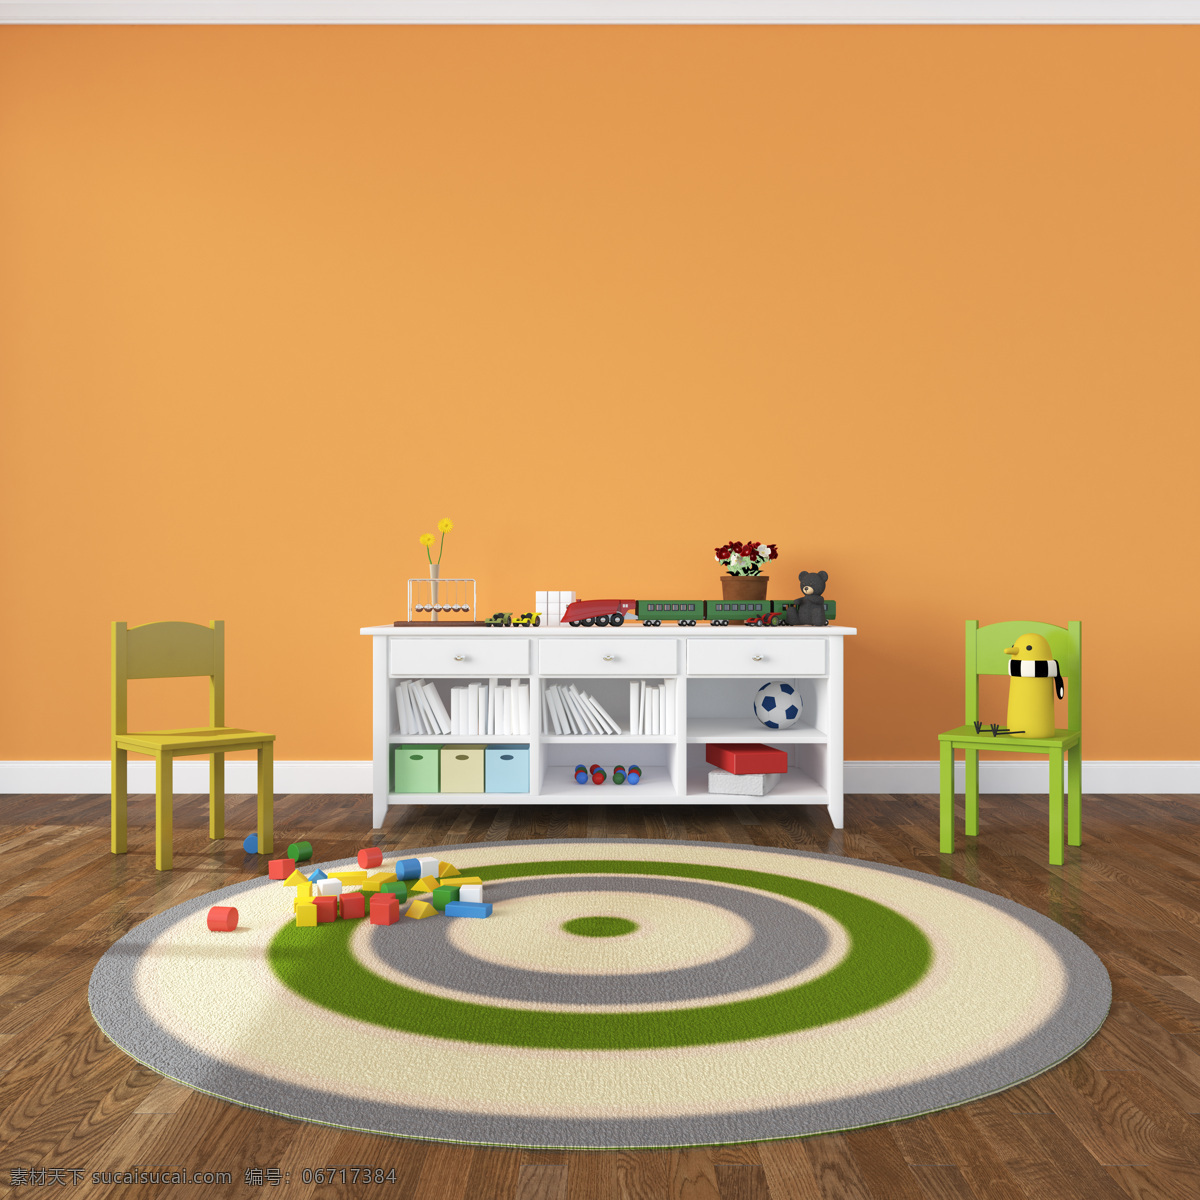 儿童 房间 装饰设计 书架 椅子 室内装饰设计 室内装修设计 室内装潢设计 室内设计 效果图 环境家居 橙色